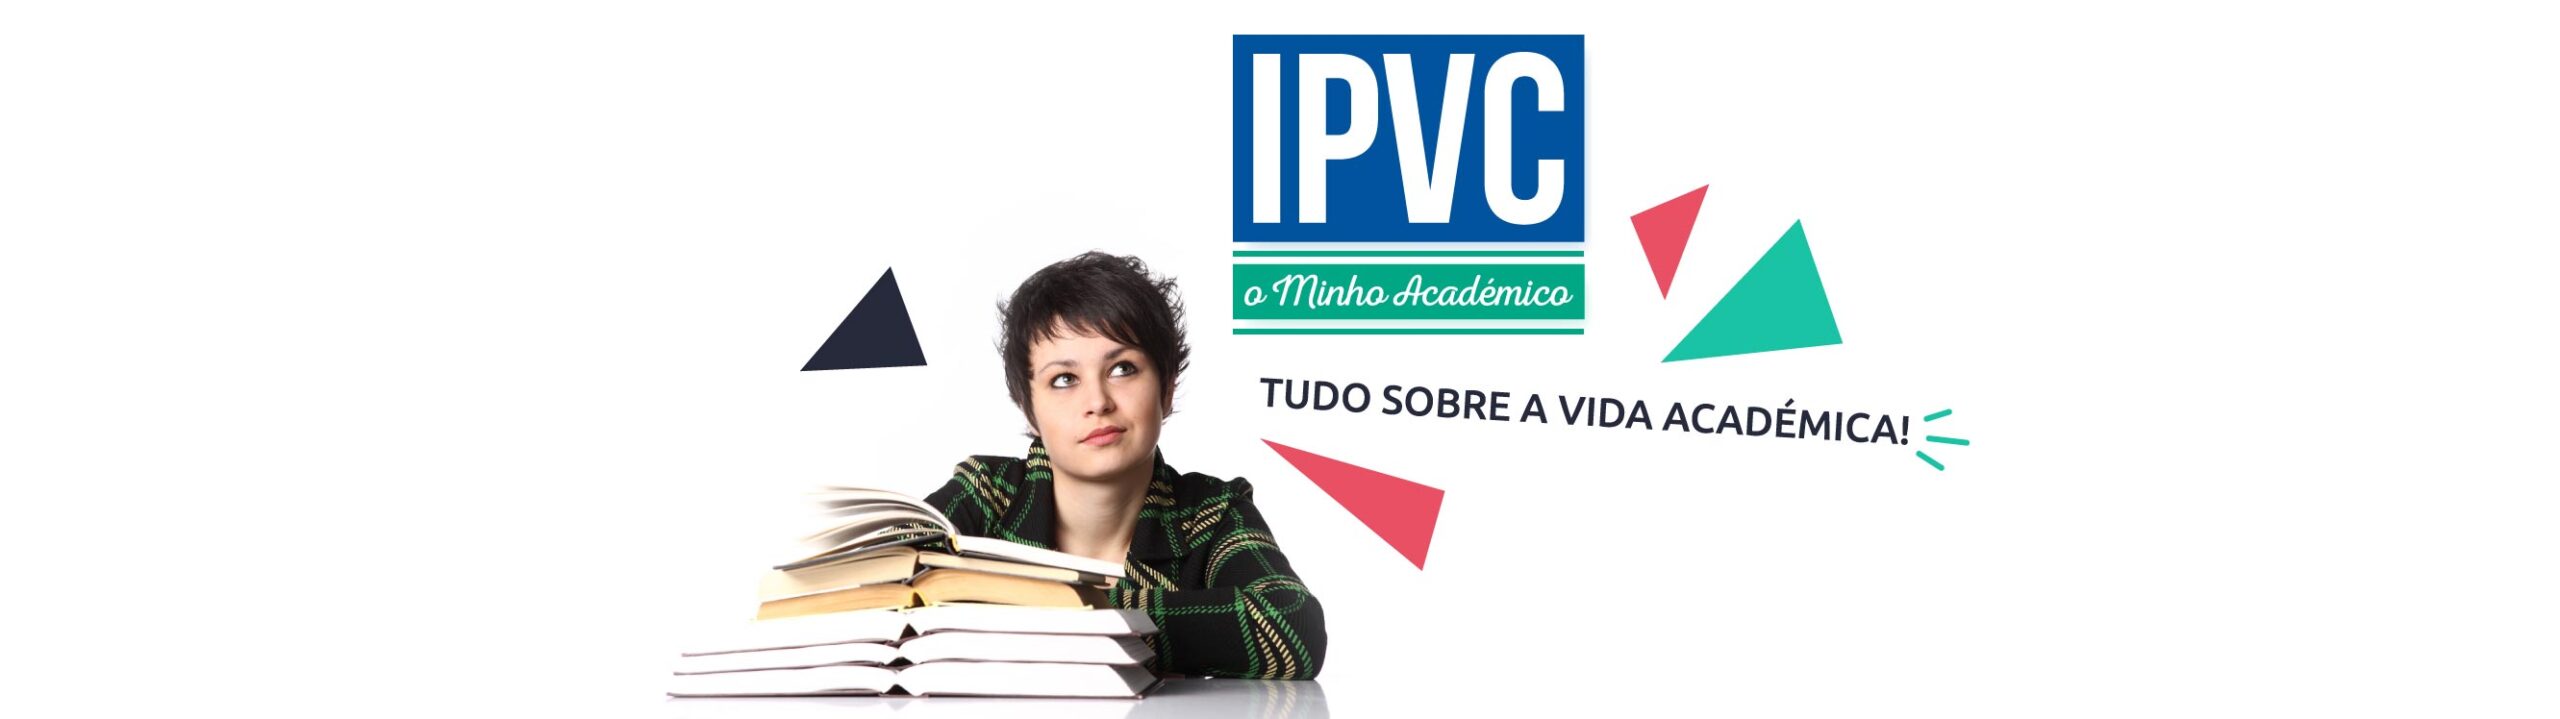 IPVC – O Minho Académico (Ed. 034)